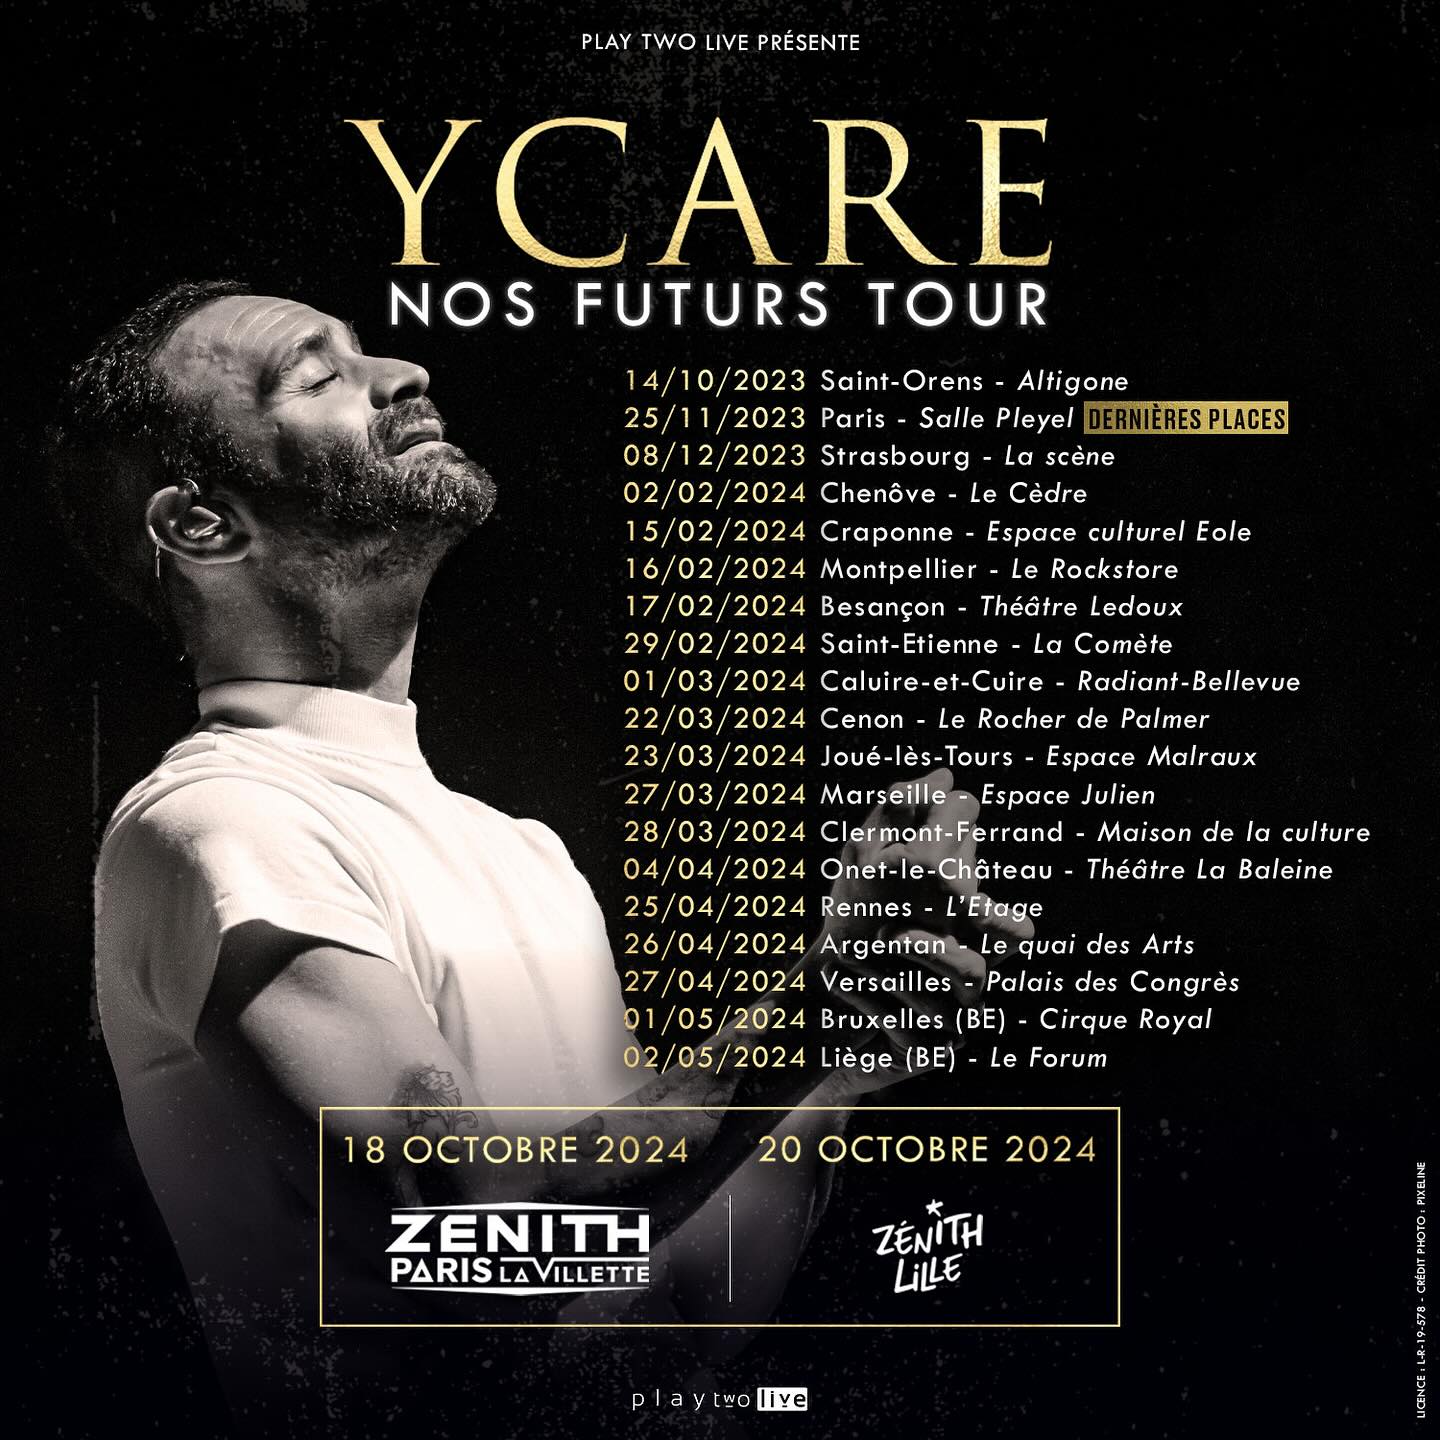 Ycare - Nos Futurs Tour en Zenith Lille Tickets